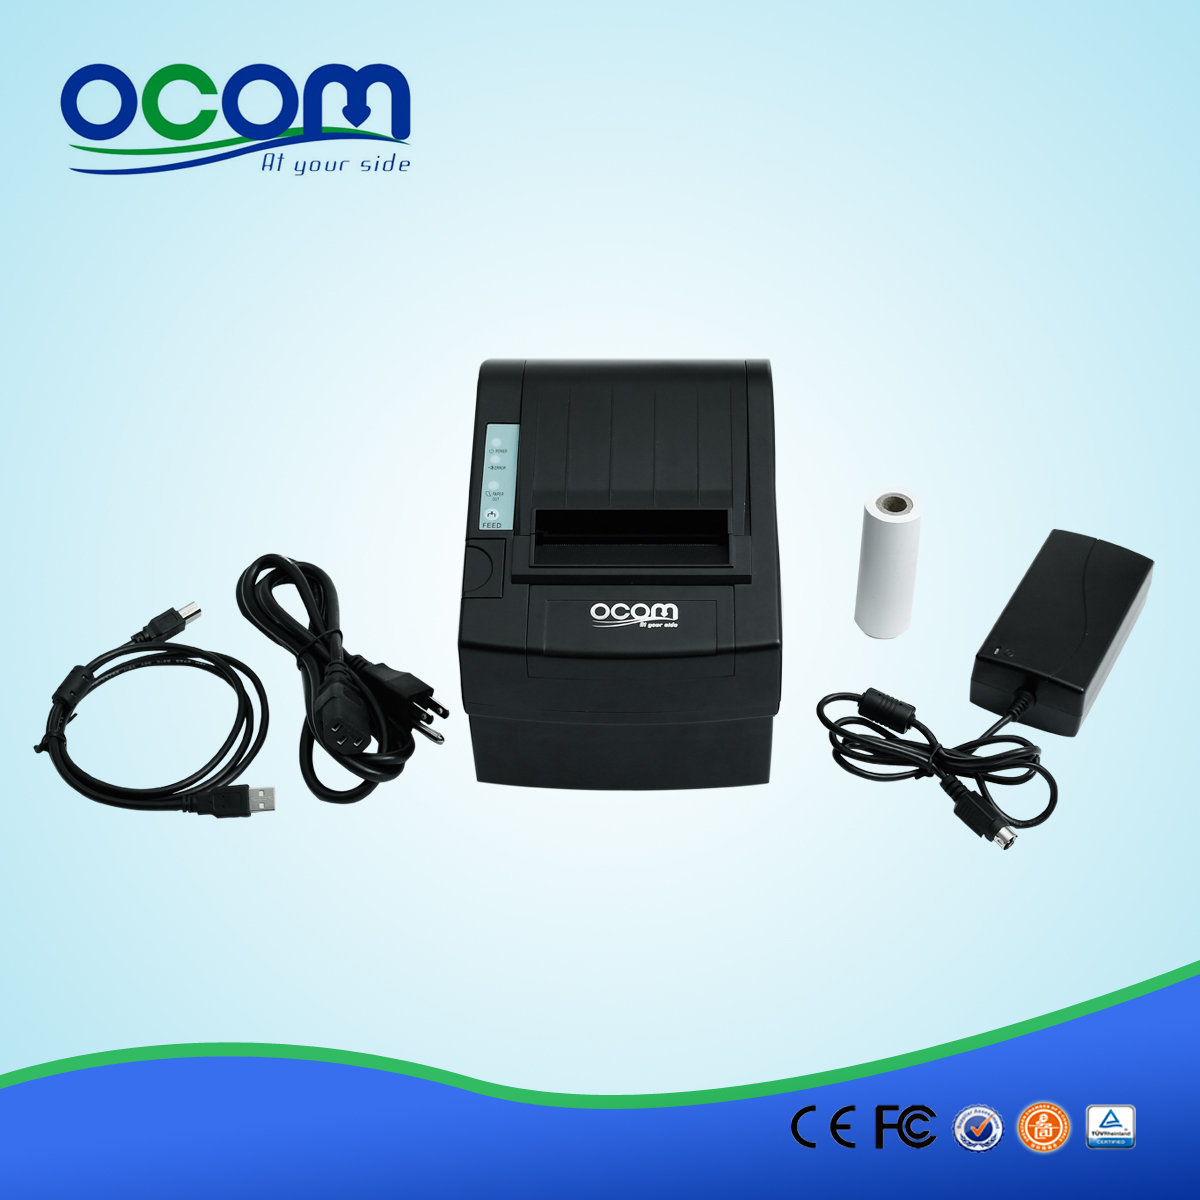 80毫米高品质的无线wifi POS收据打印机OCPP-806-W